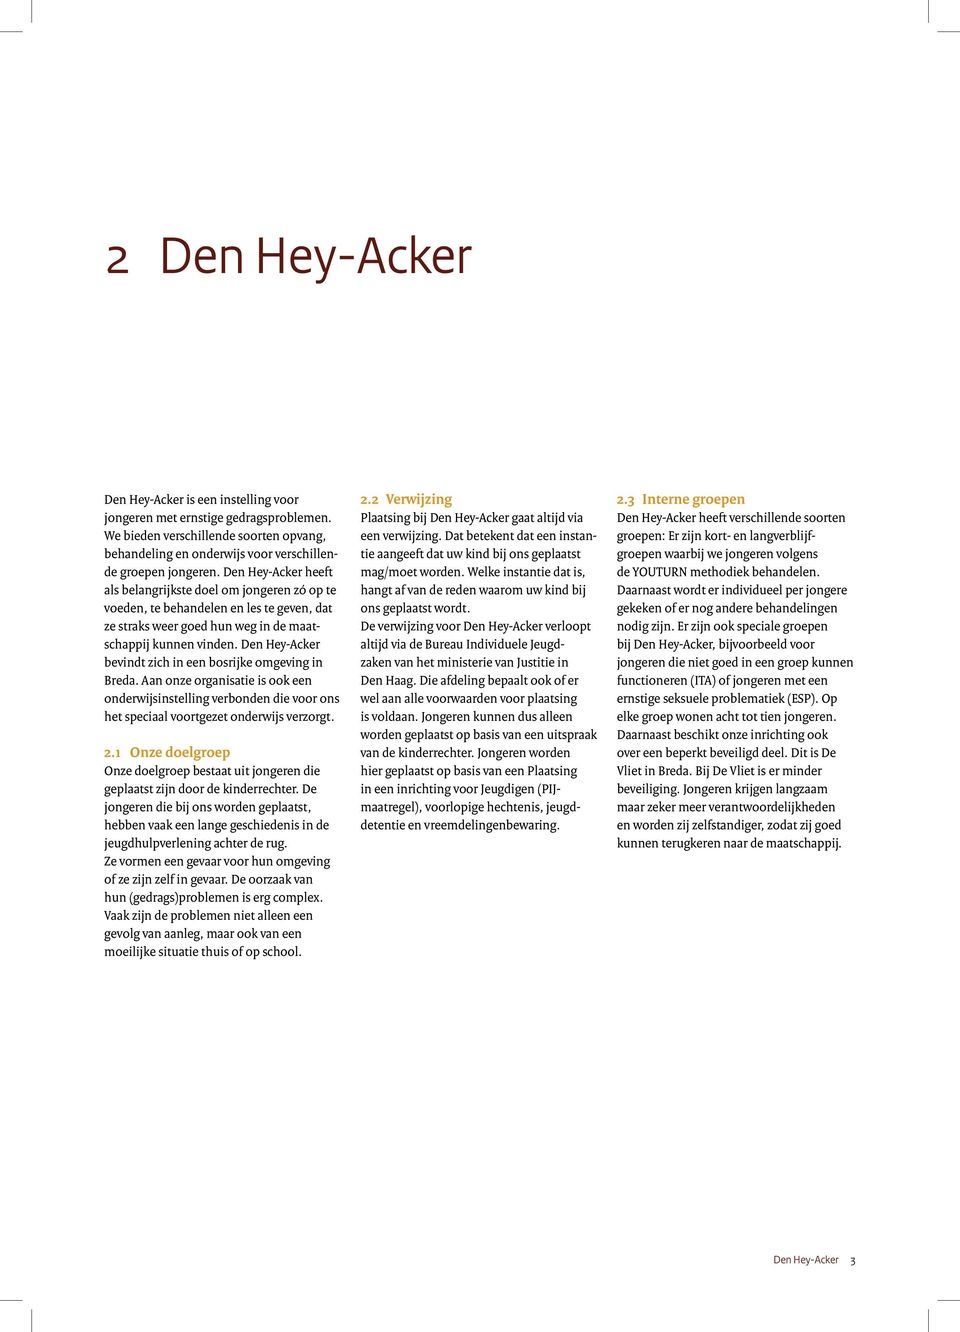 Den Hey-Acker bevindt zich in een bosrijke omgeving in Breda. Aan onze organisatie is ook een onderwijsinstelling verbonden die voor ons het speciaal voortgezet onderwijs verzorgt. 2.